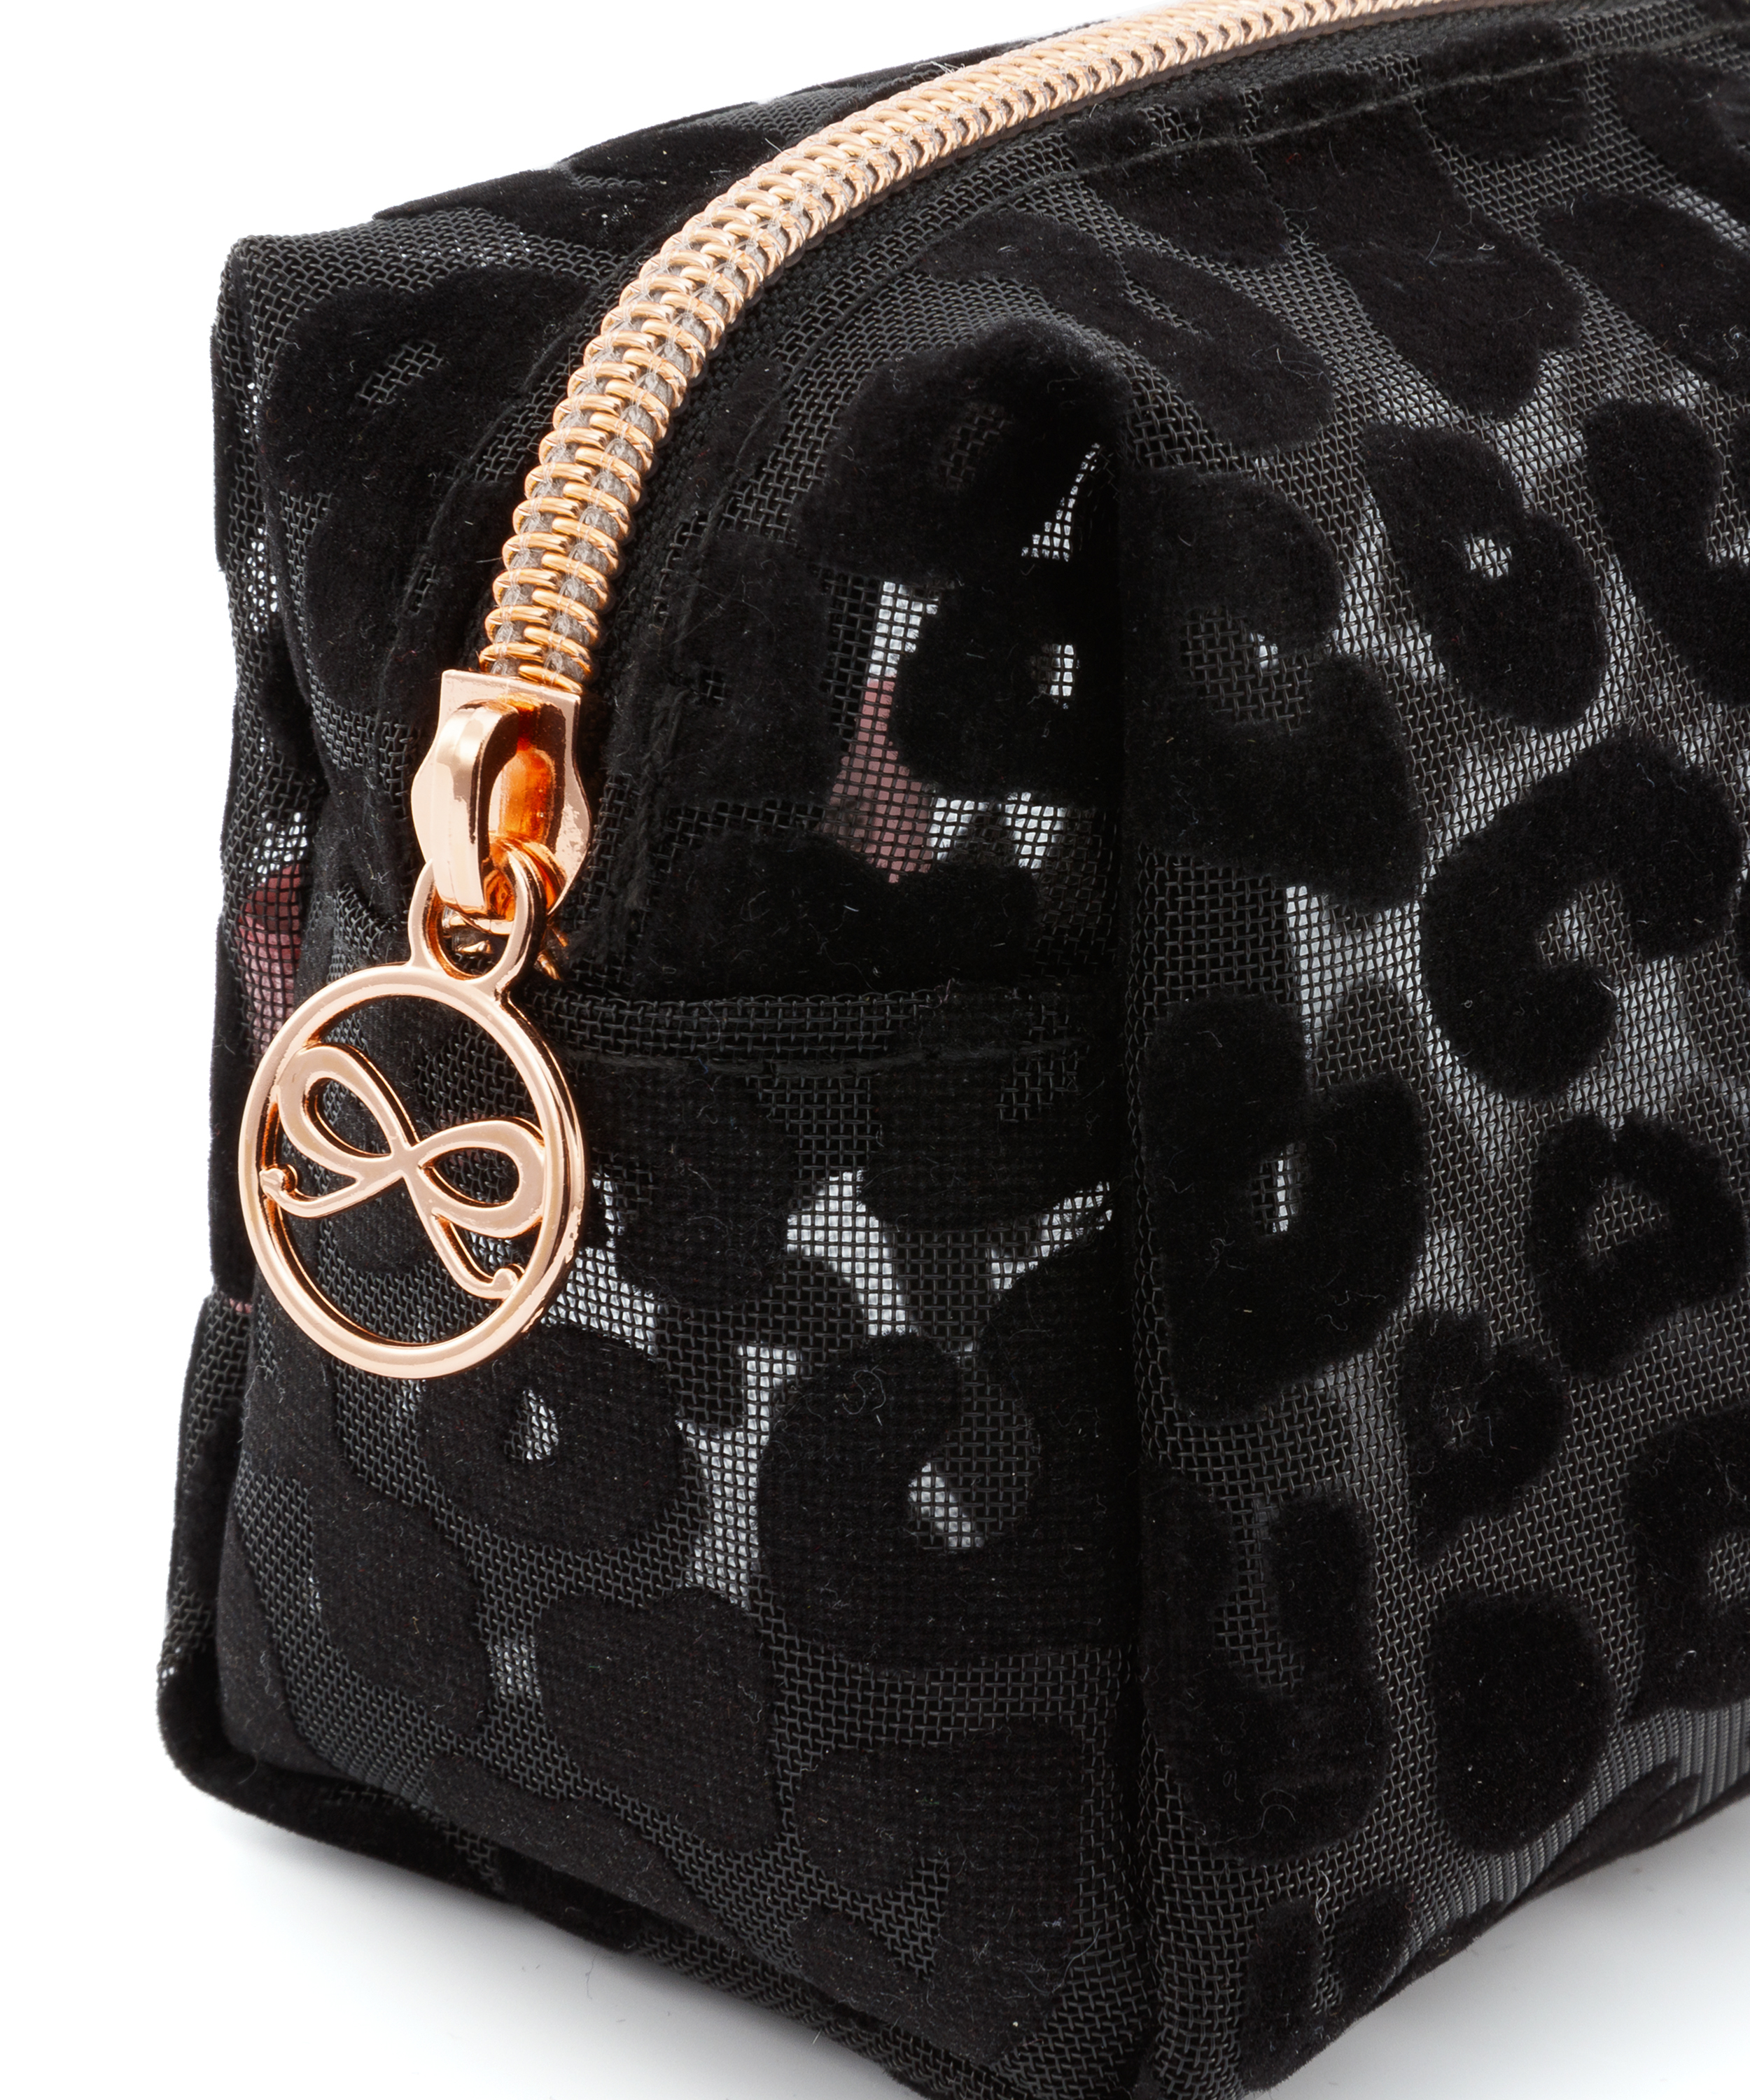 Uiterlijk Decoratief eenheid Make up tas mesh leopard voor €7.99 - Accessoires - Hunkemöller